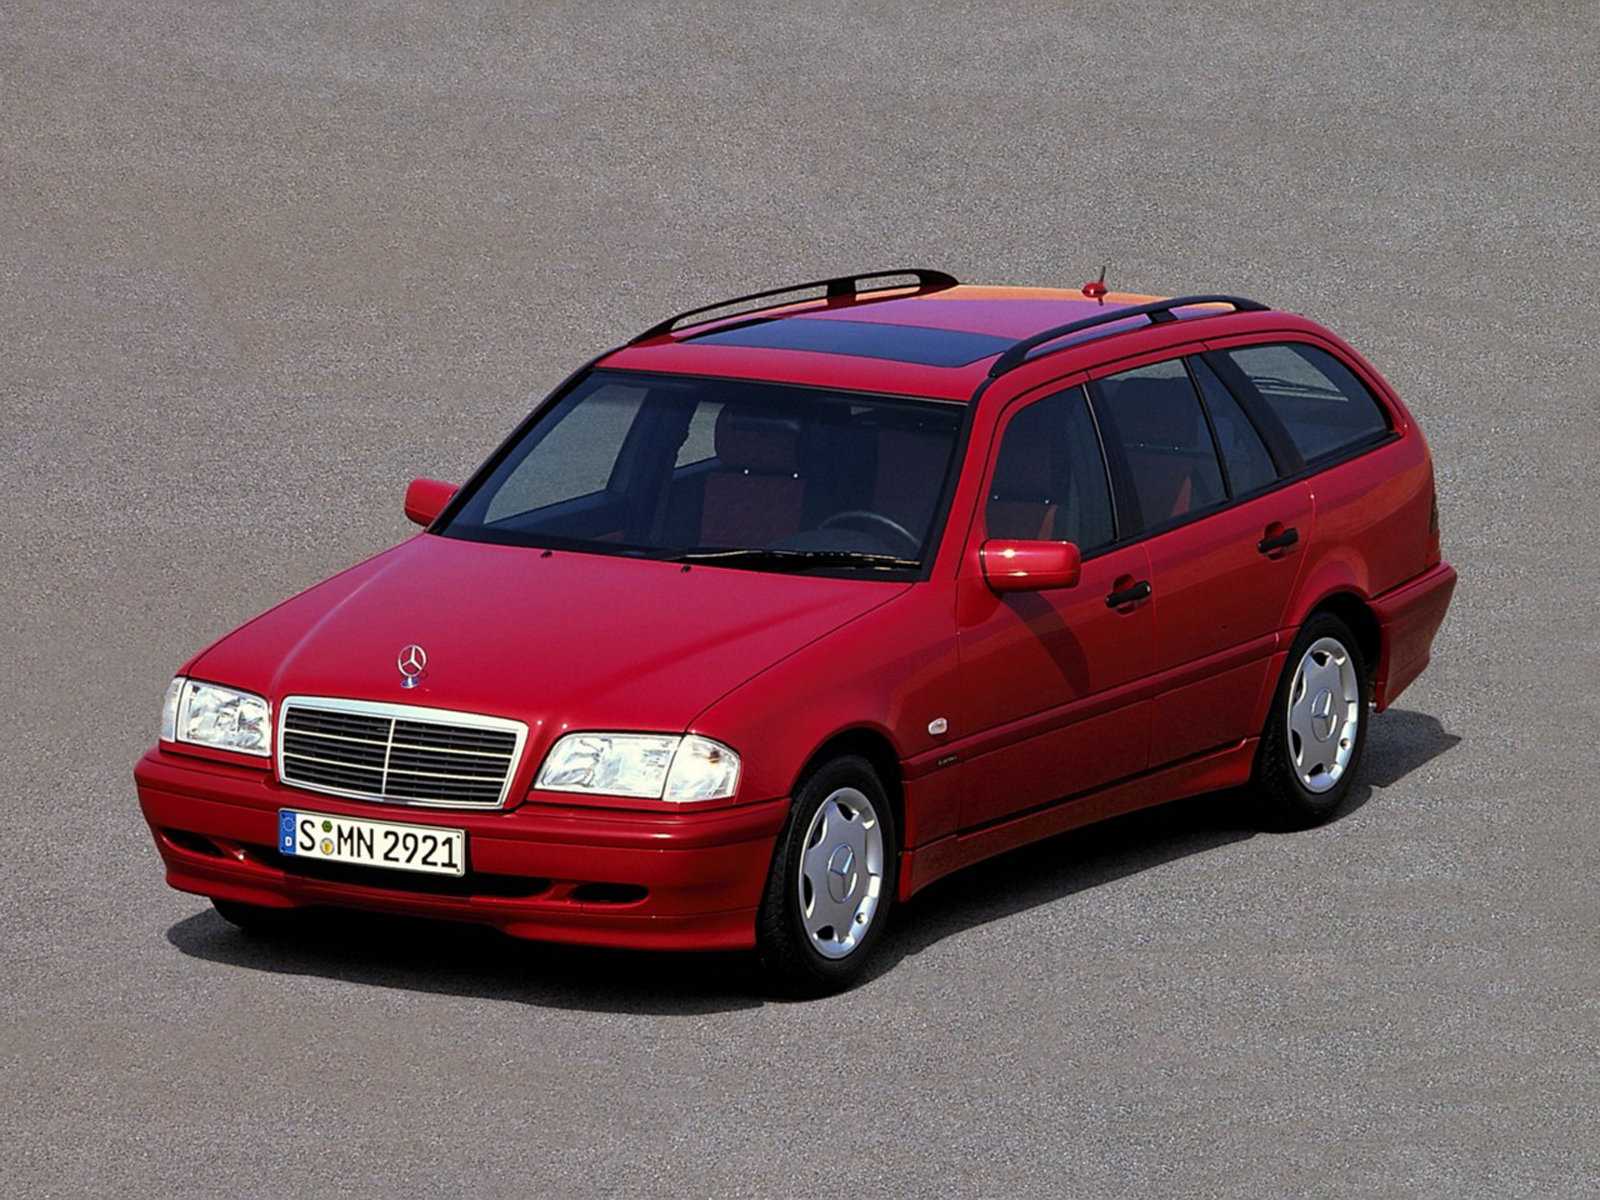 Mercedes-benz c-класс (w202) с 1997 - 2000 — технические характеристики автомобилей